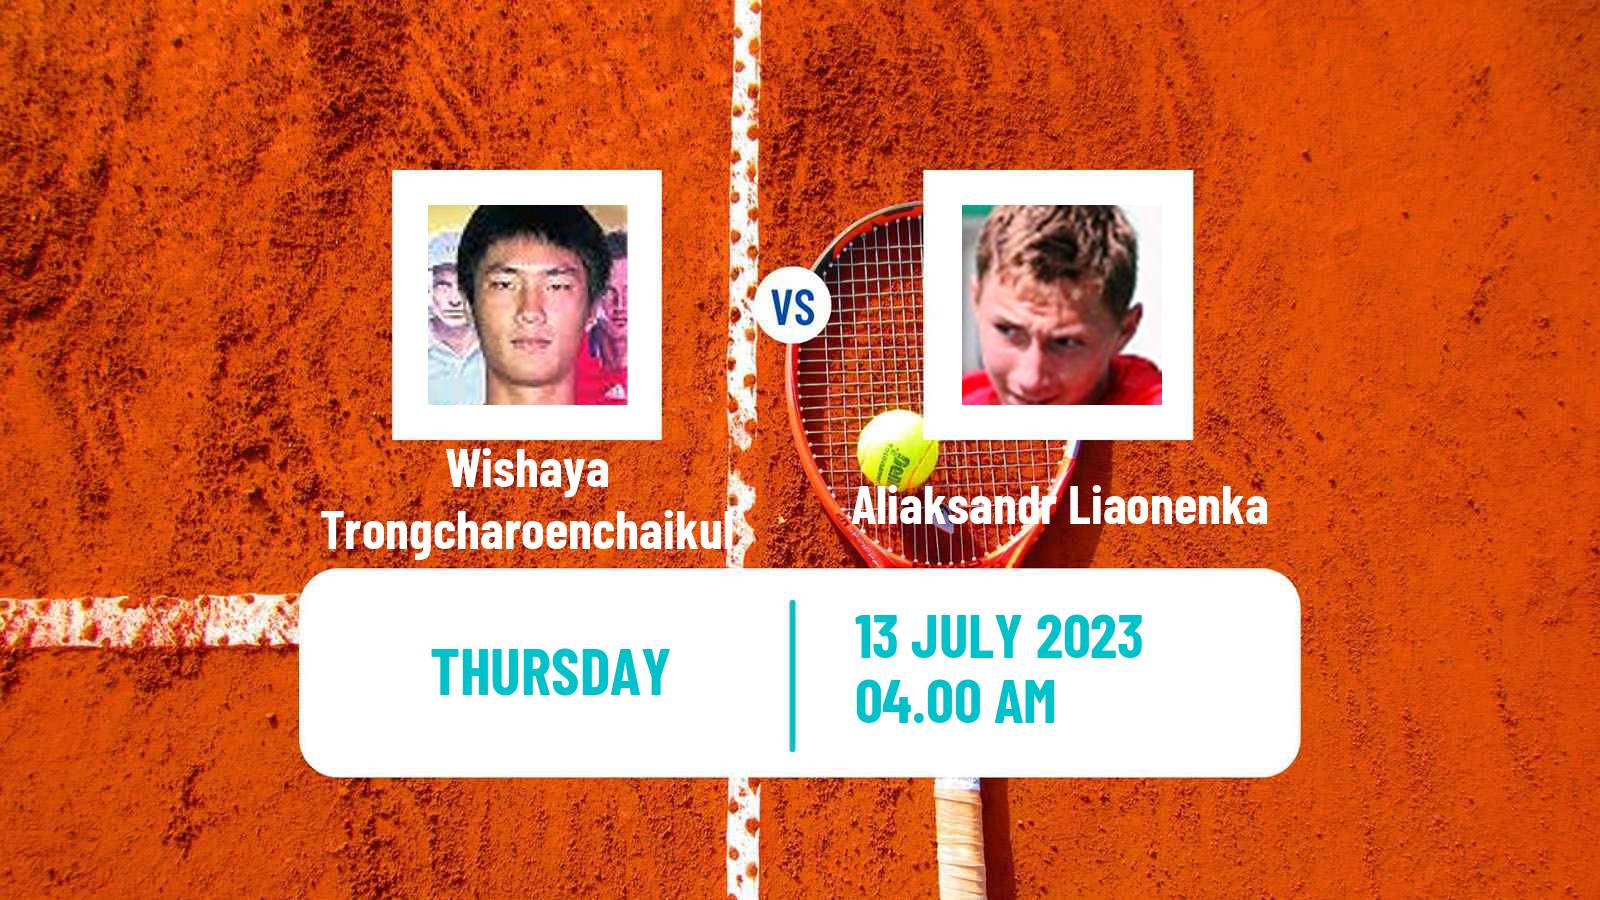 Tennis ITF M15 Shanghai Men Wishaya Trongcharoenchaikul - Aliaksandr Liaonenka